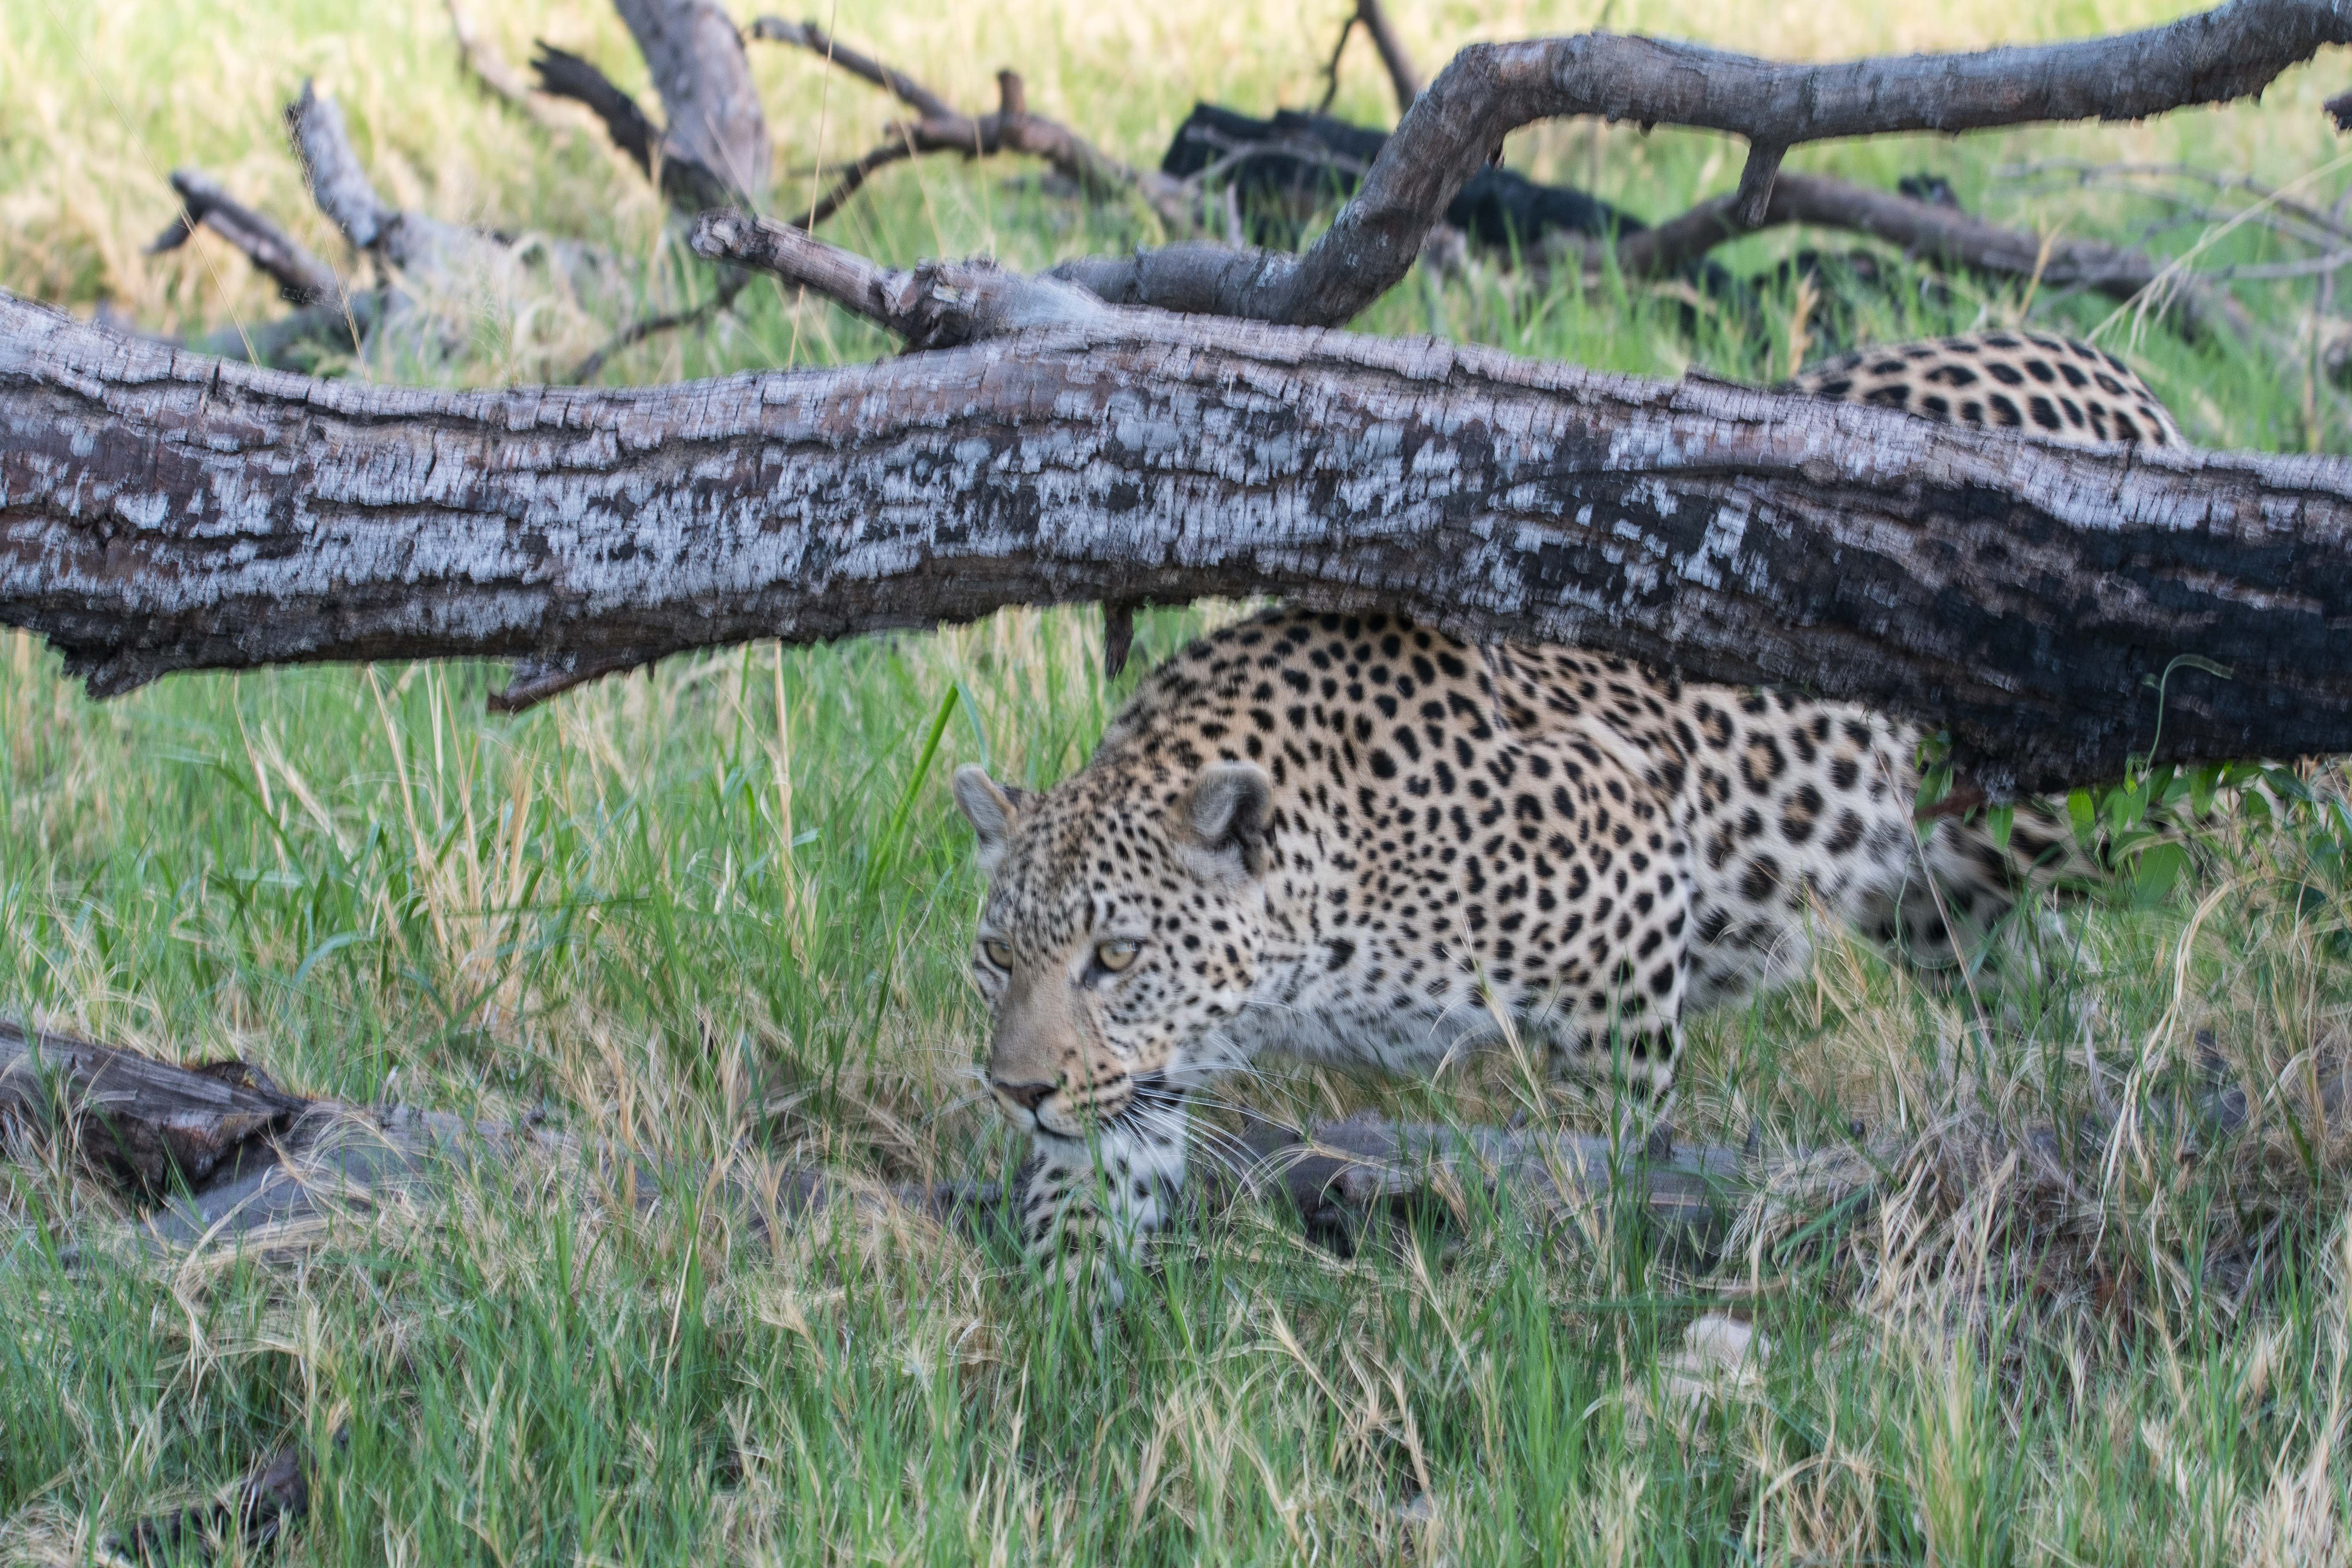 Léopard (Leopard, Panthera pardus), femelle d'environ 4 ans se faufilant dans la végétation, Shinde,   delta de l'Okavango, Botswana.